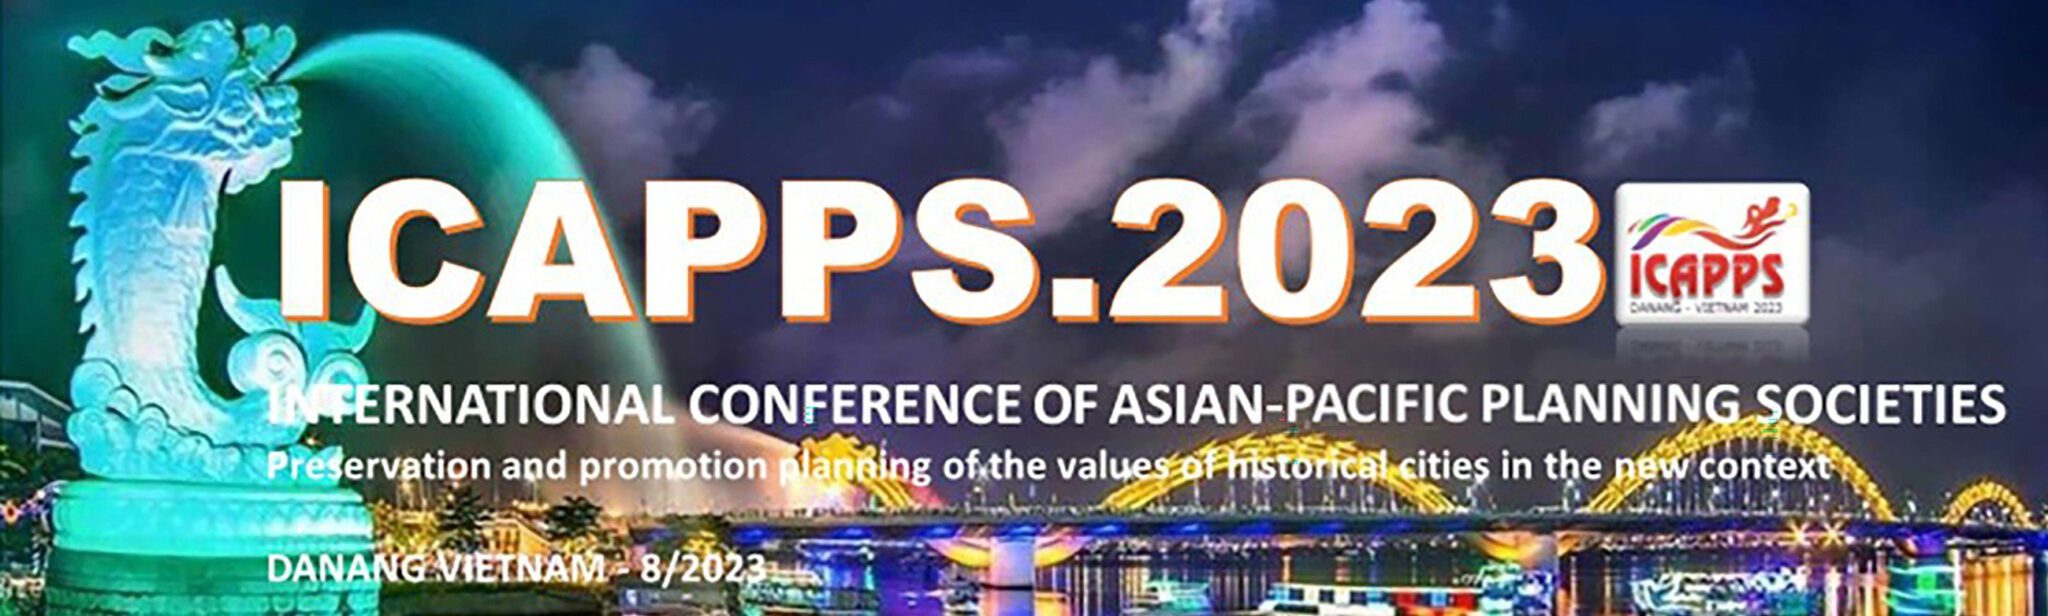 Thư mời tham gia viết bài Hội nghị quốc tế các Hiệp hội Quy hoạch châu Á - Thái Bình Dương 2023 